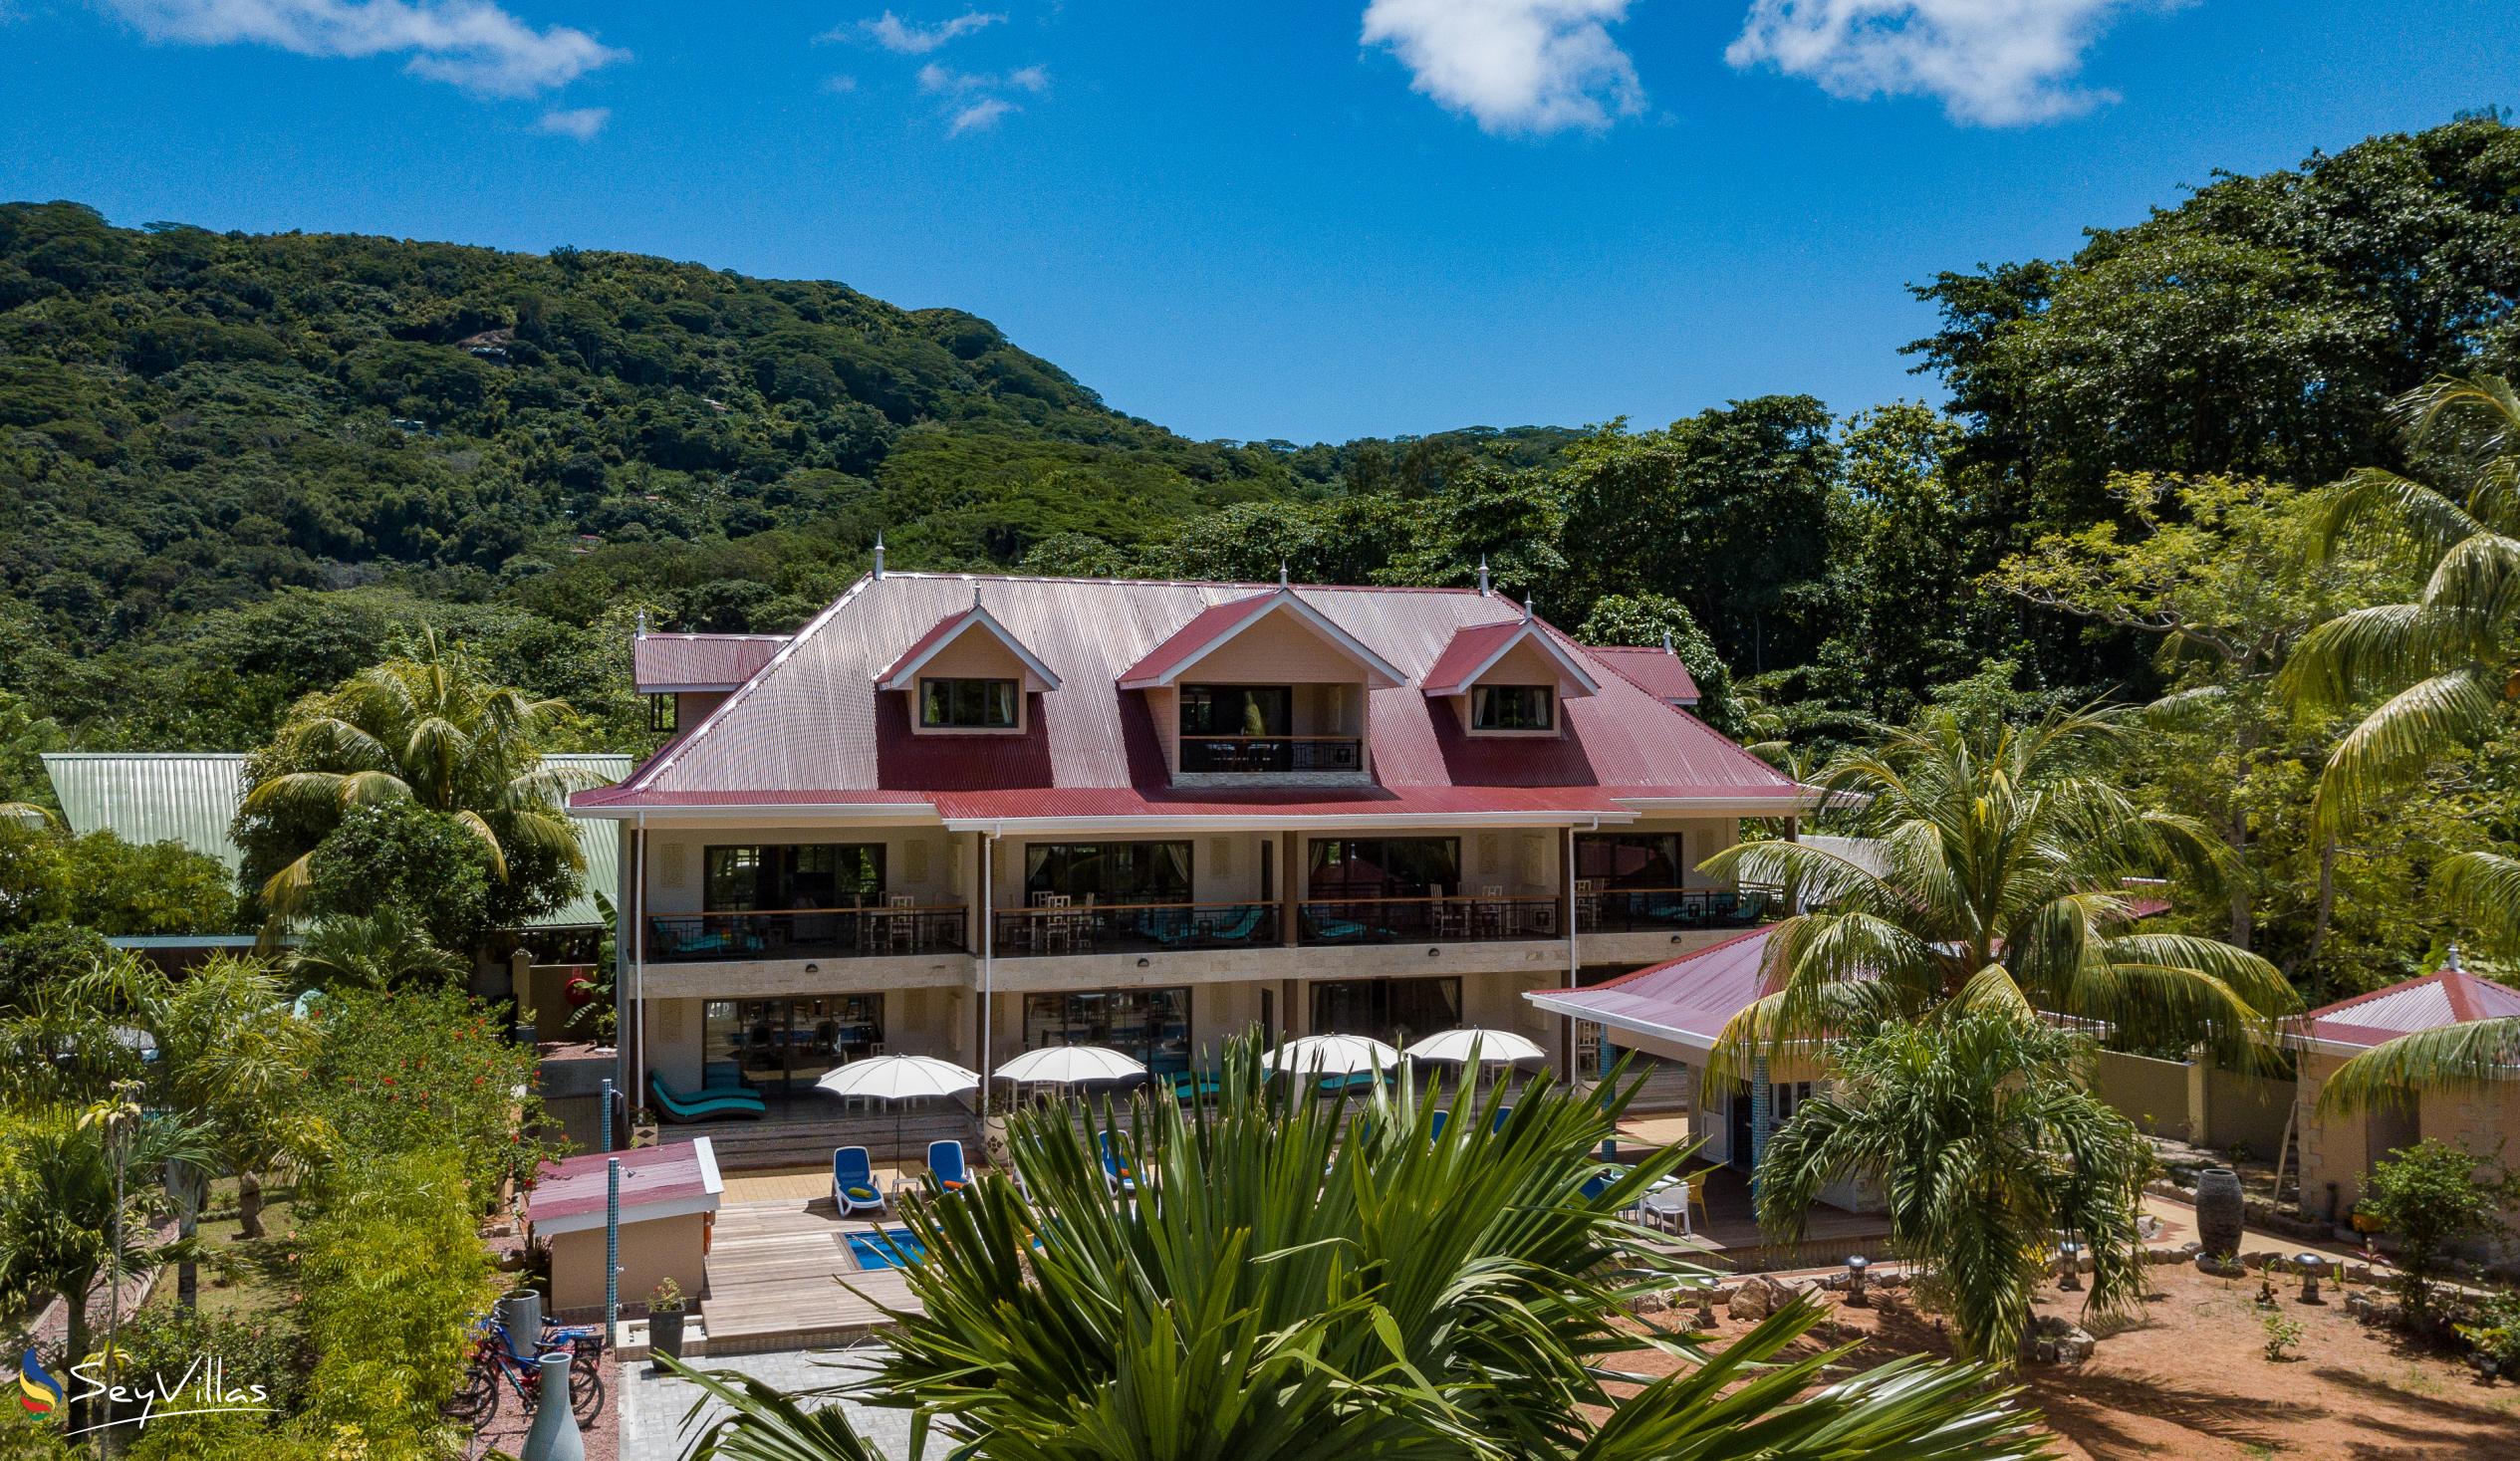 Foto 3: Casa de Leela - Extérieur - La Digue (Seychelles)